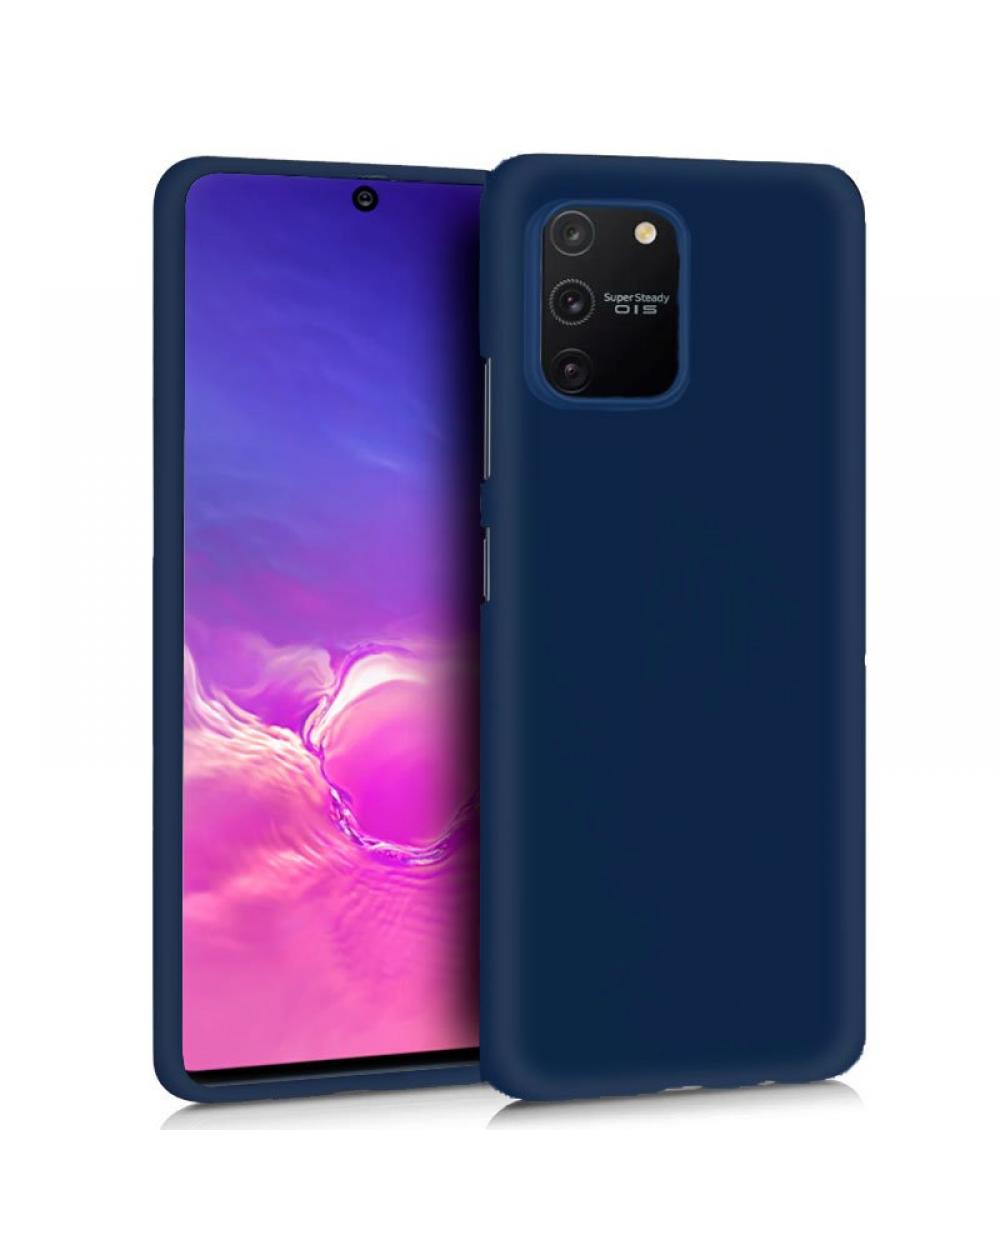 Funda COOL Silicona para Samsung G770 Galaxy S10 Lite (Azul) - Imagen 1